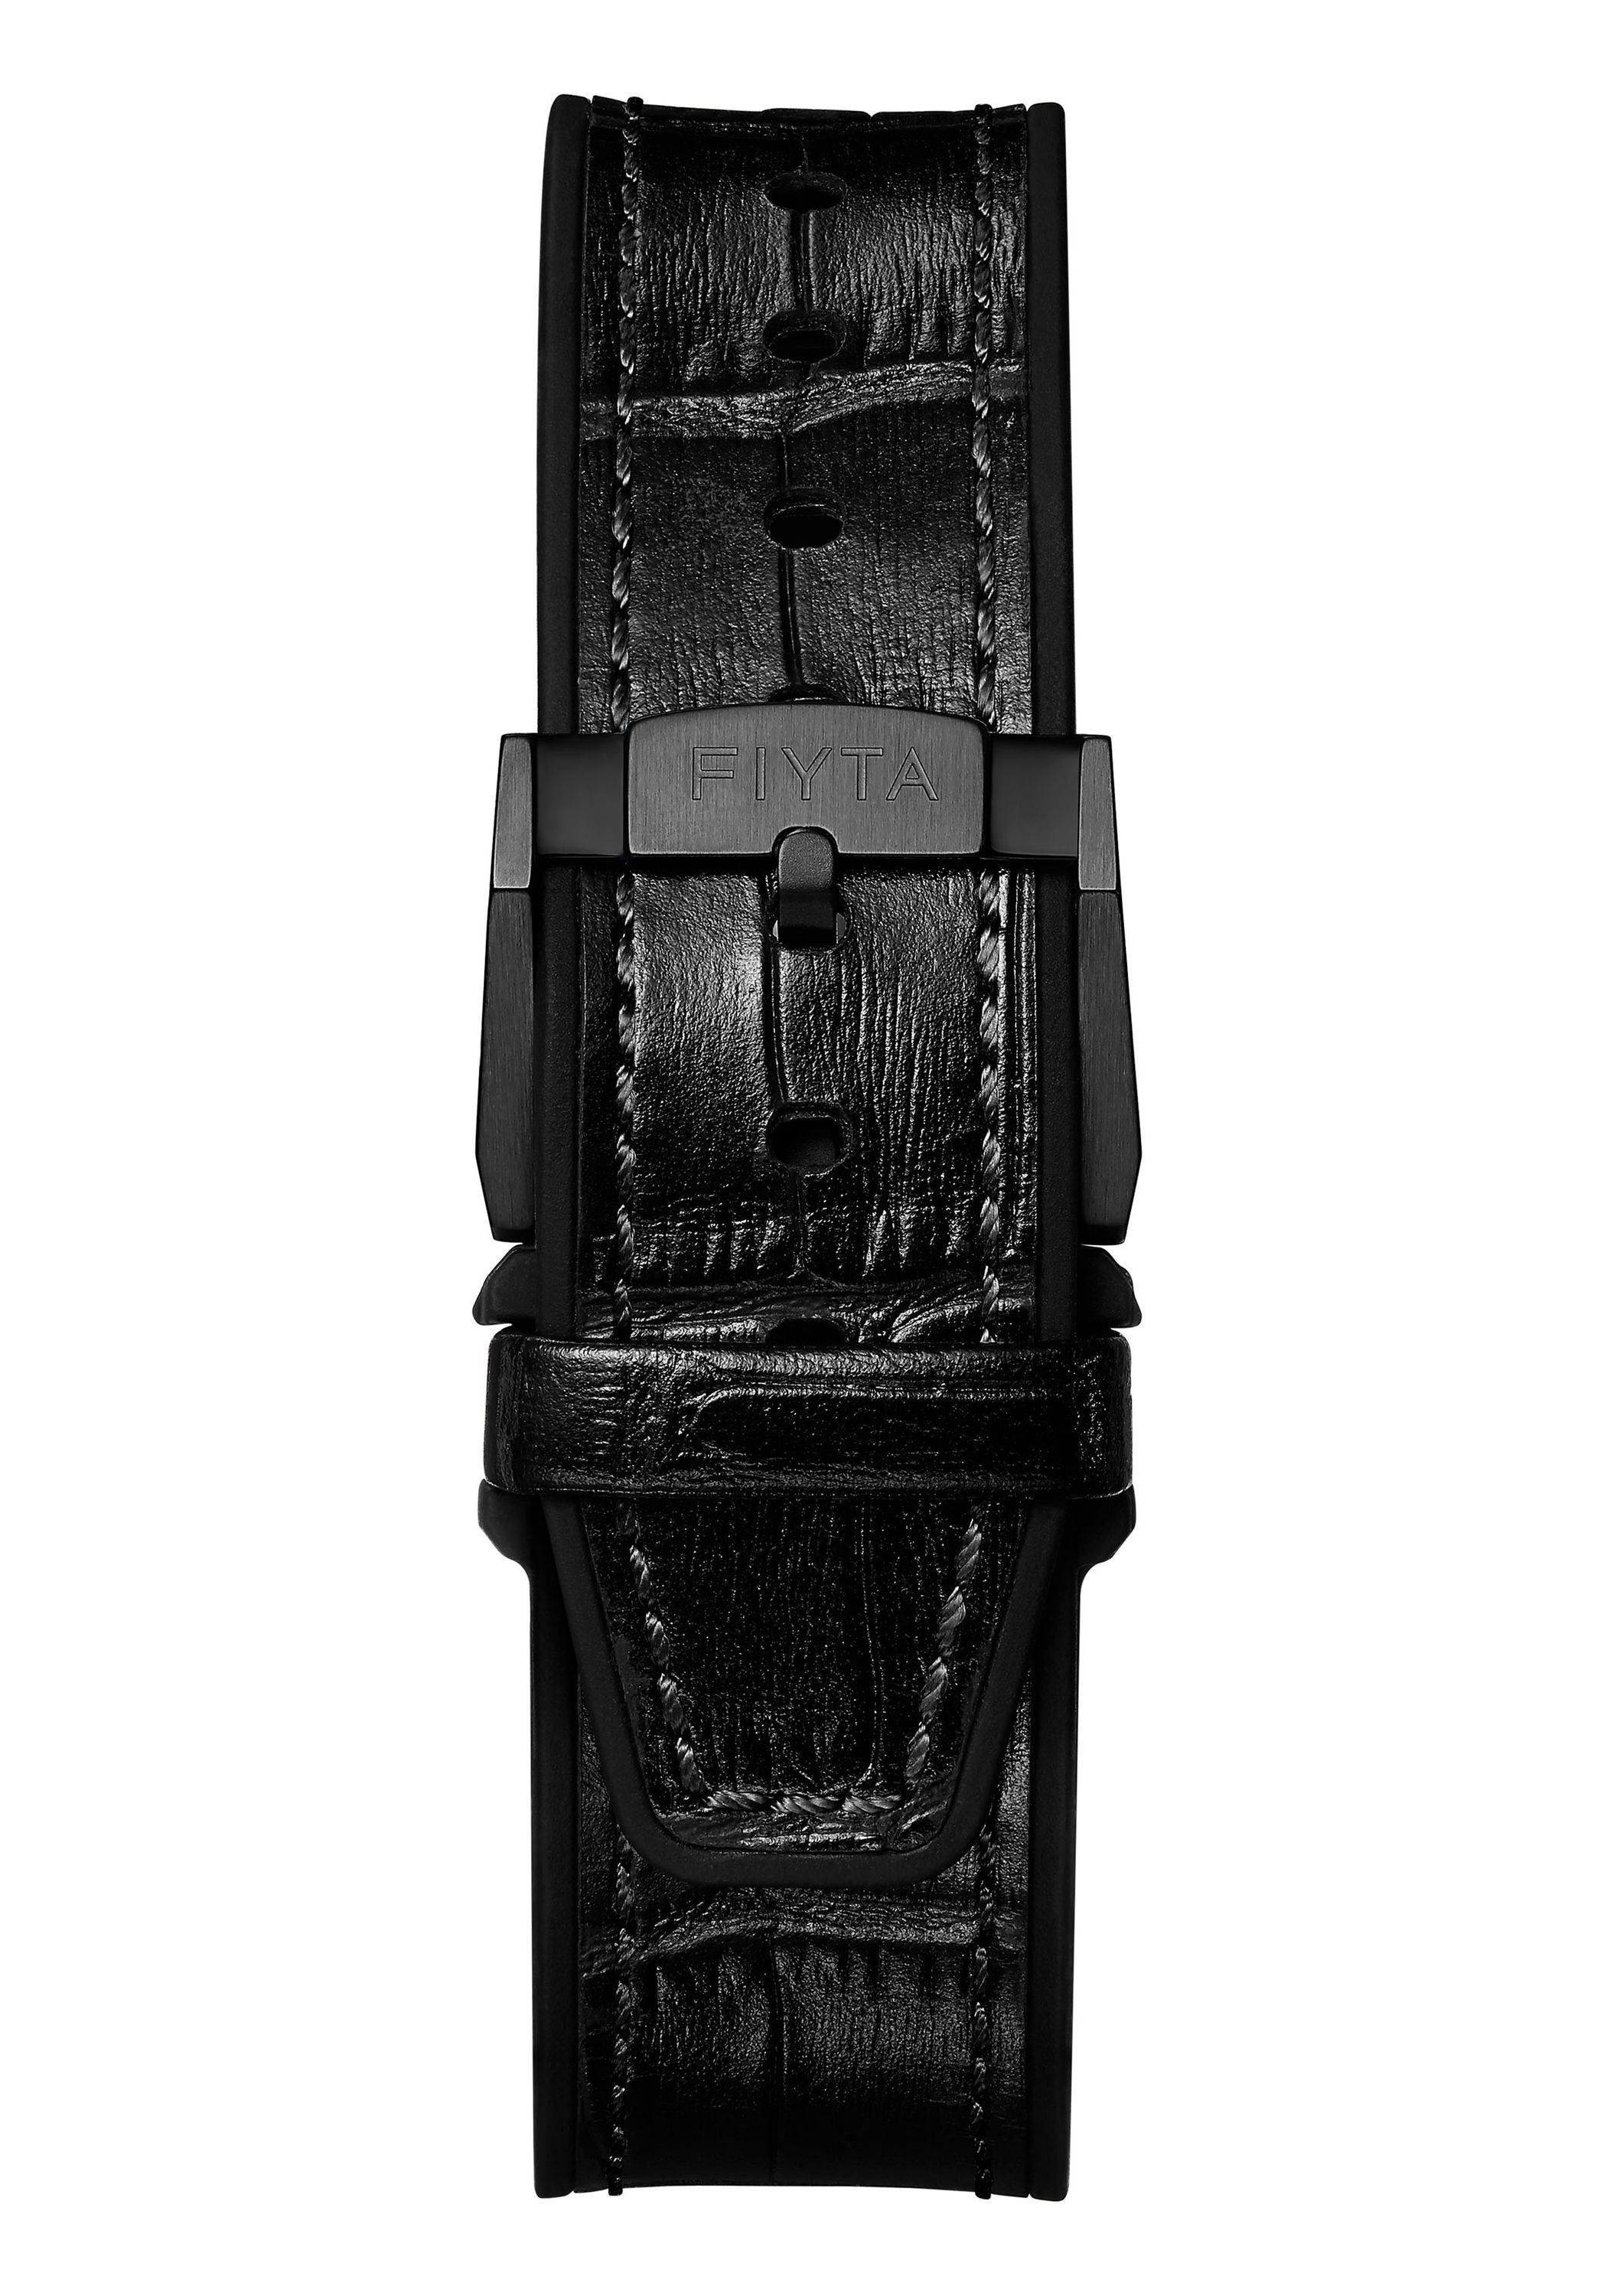 FIYTA Automatikuhr GA866013.BBB schwarz mit skelettiertem Extreme und Zifferblatt Leuchtzeigern